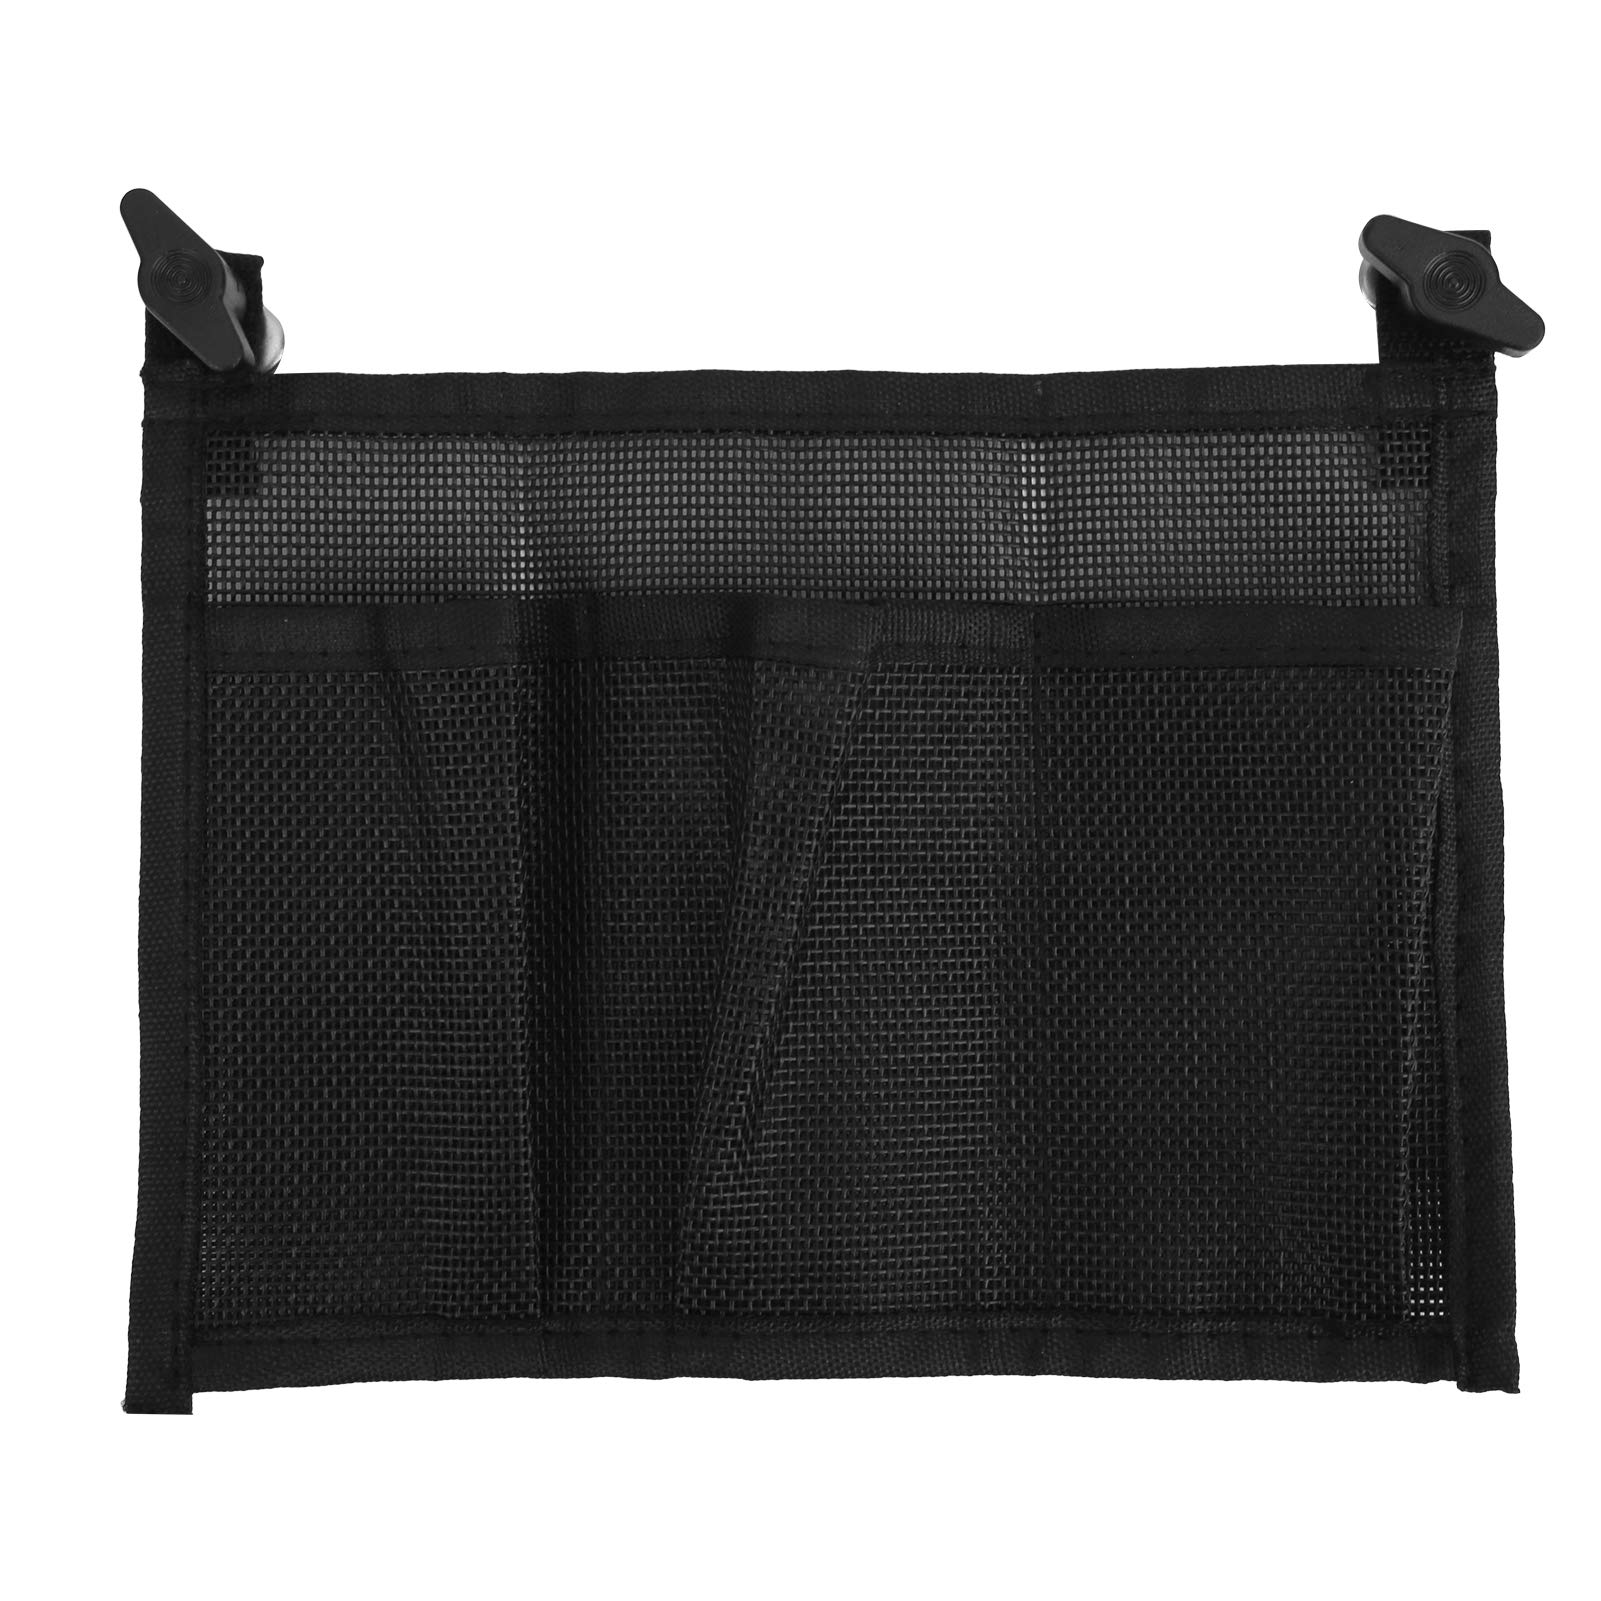 Alomejor Storage Mesh Bag Durable Black Nylon Storage Bag Marine